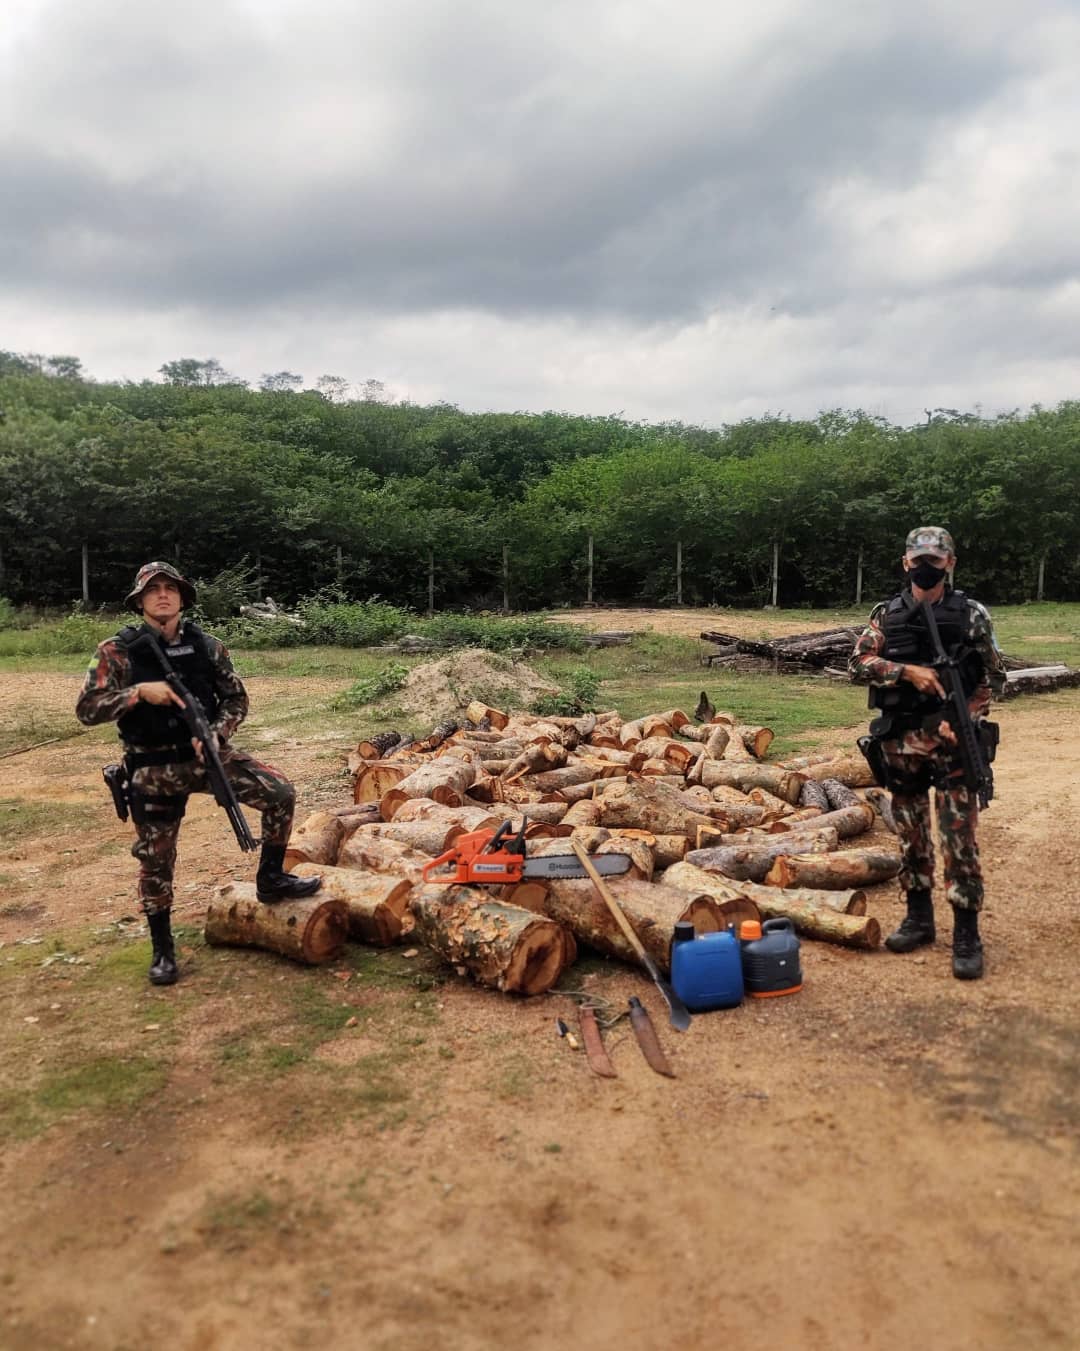 Homens são presos em flagrante por desmatamento ilegal no Sul do Piauí (Foto: Divulgação)